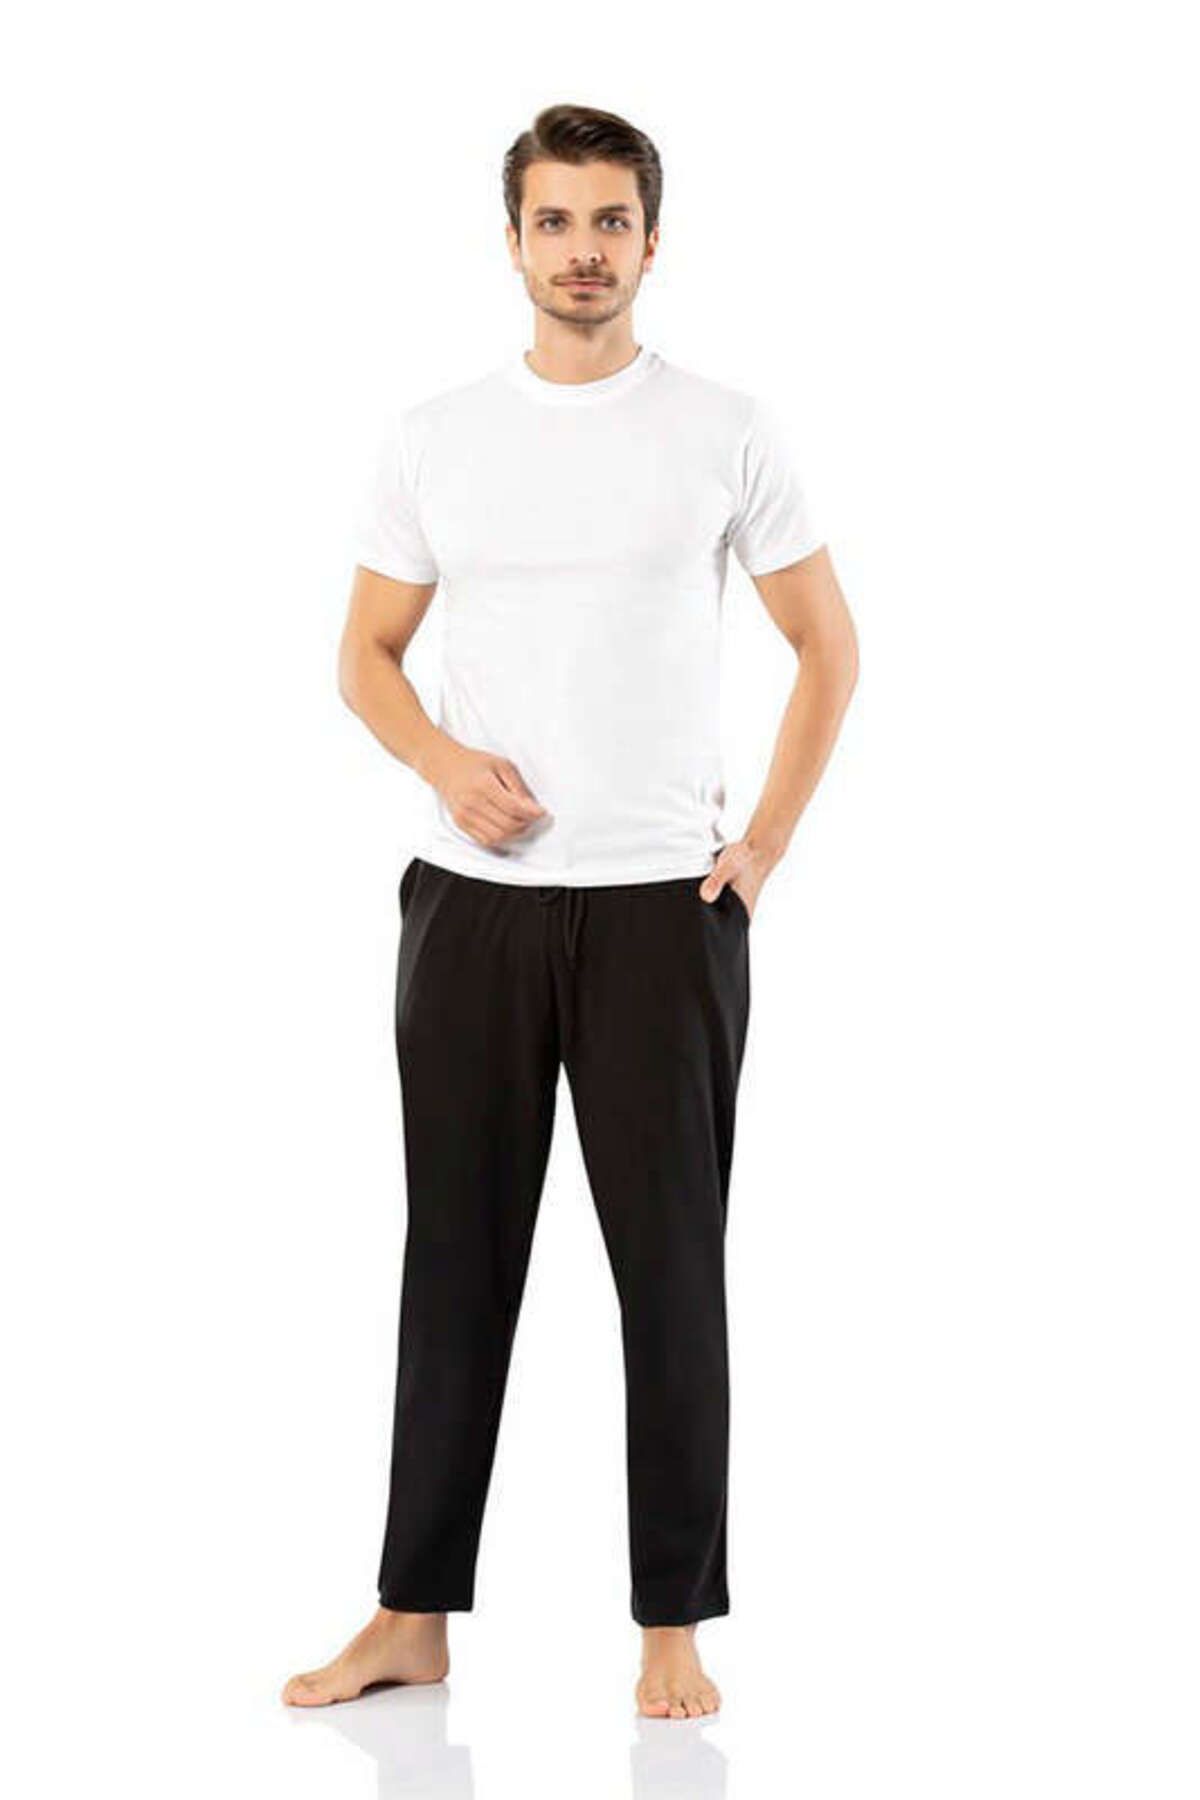 Weweus Siyah Erdem İç Giyim Erkek Kışlık Eşofman Alt Renk Siyah Beden XL 81071